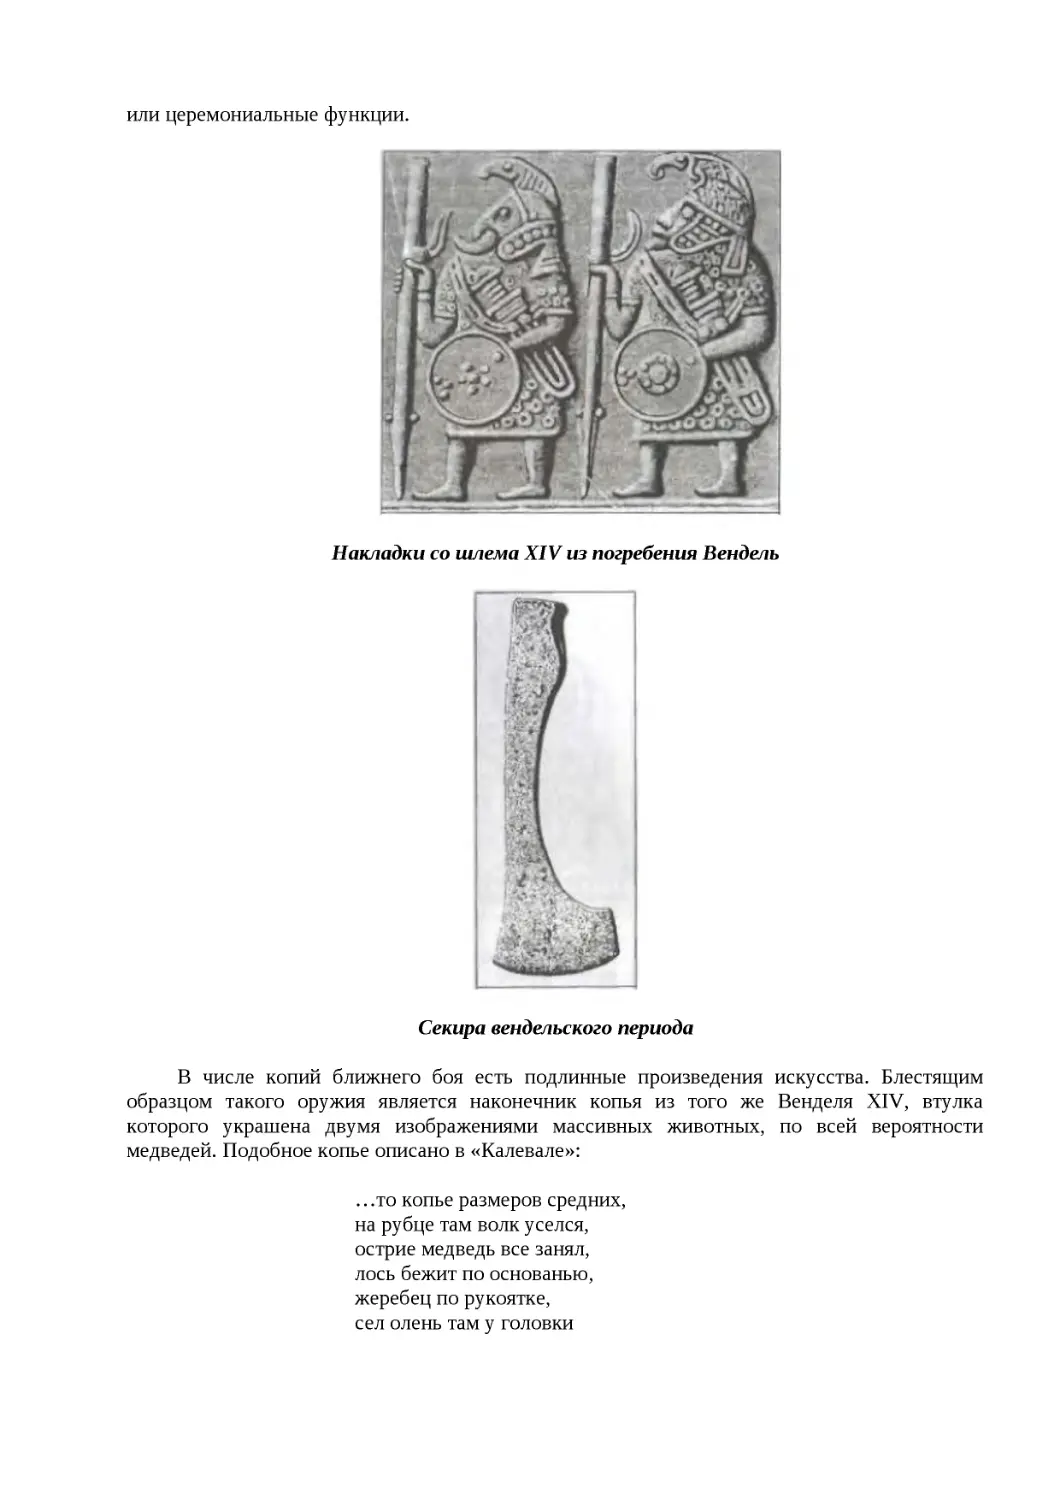 ﻿Накладки со шлема XIV из погребения Вендел
"
﻿Секира вендельского период